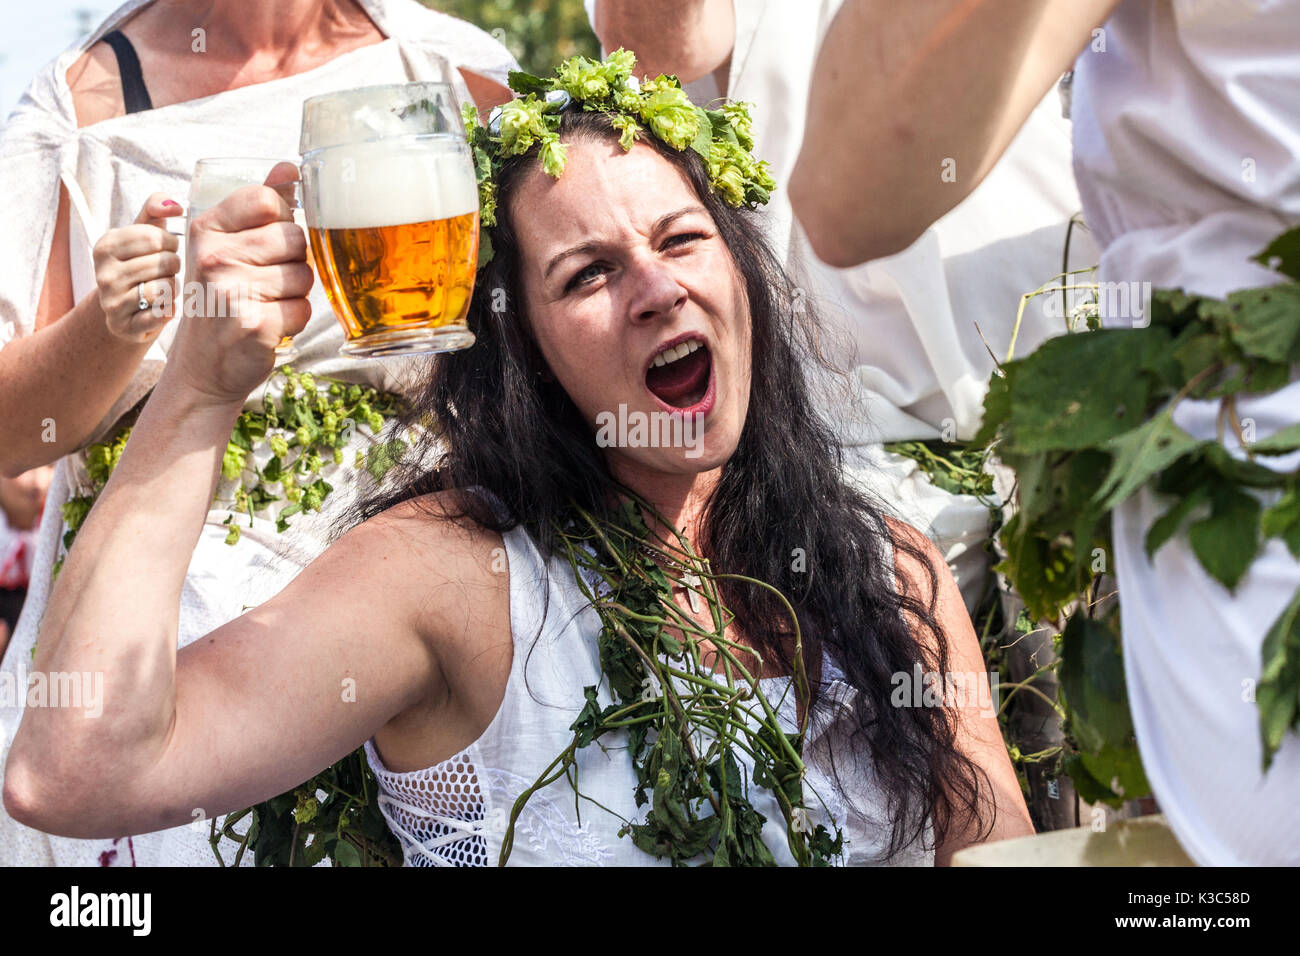 Tschechisches Bierfest, Junge Frau trinkt Bier Tschechische Republik genießt Bier, Frau jubelt Bier Frau Wreath of Hop Stockfoto